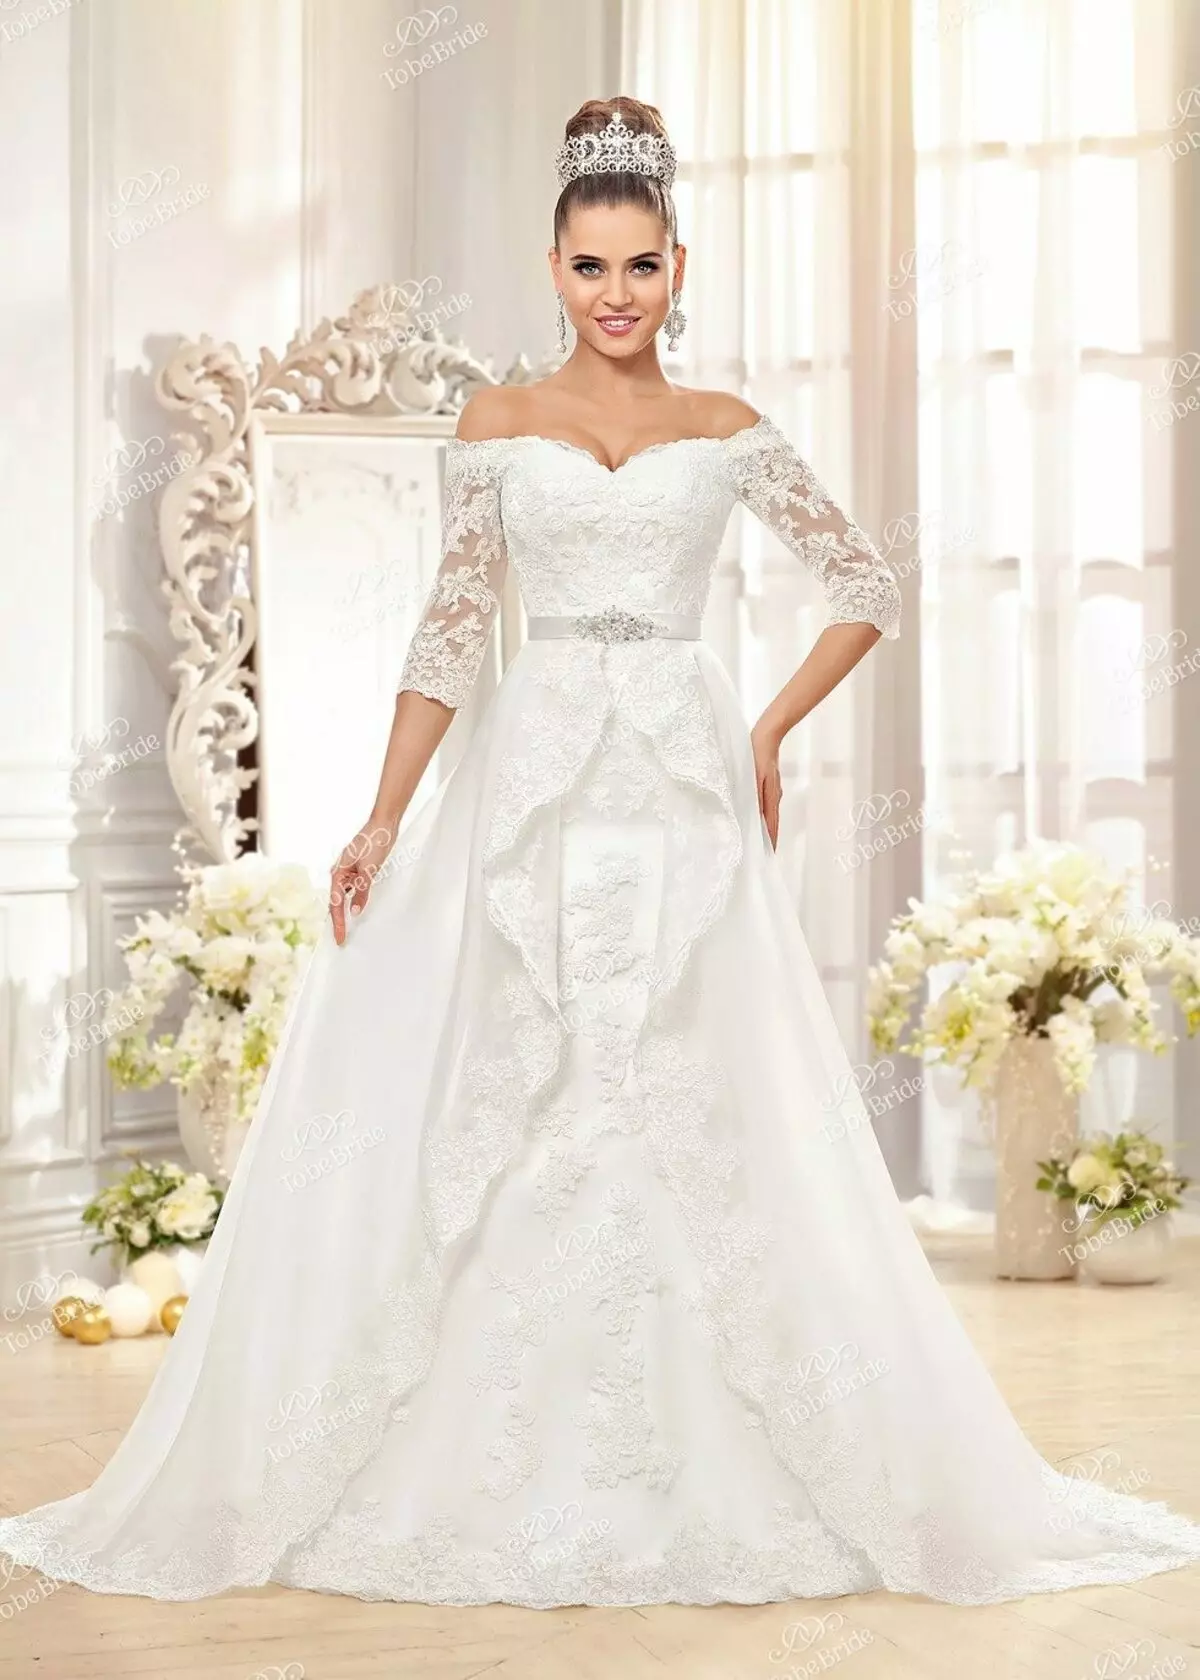 Vestido de novia de la colección nupcial 2014 en estilo princesa